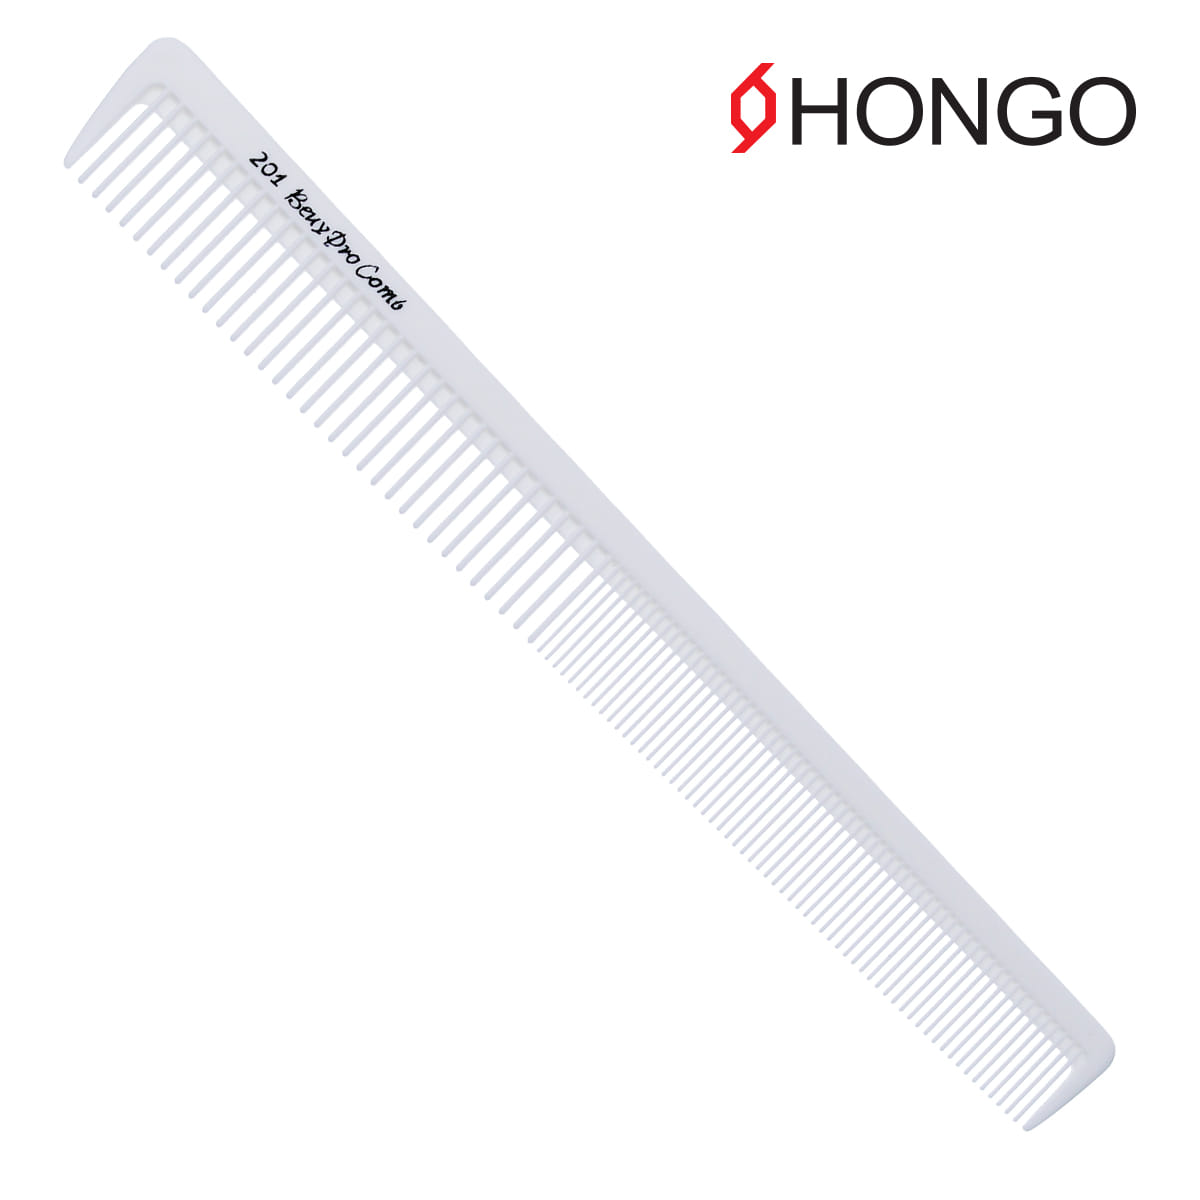 HONGO 홍고 201 커트빗 - Beuy Pro Comb 201 소프트(화이트)